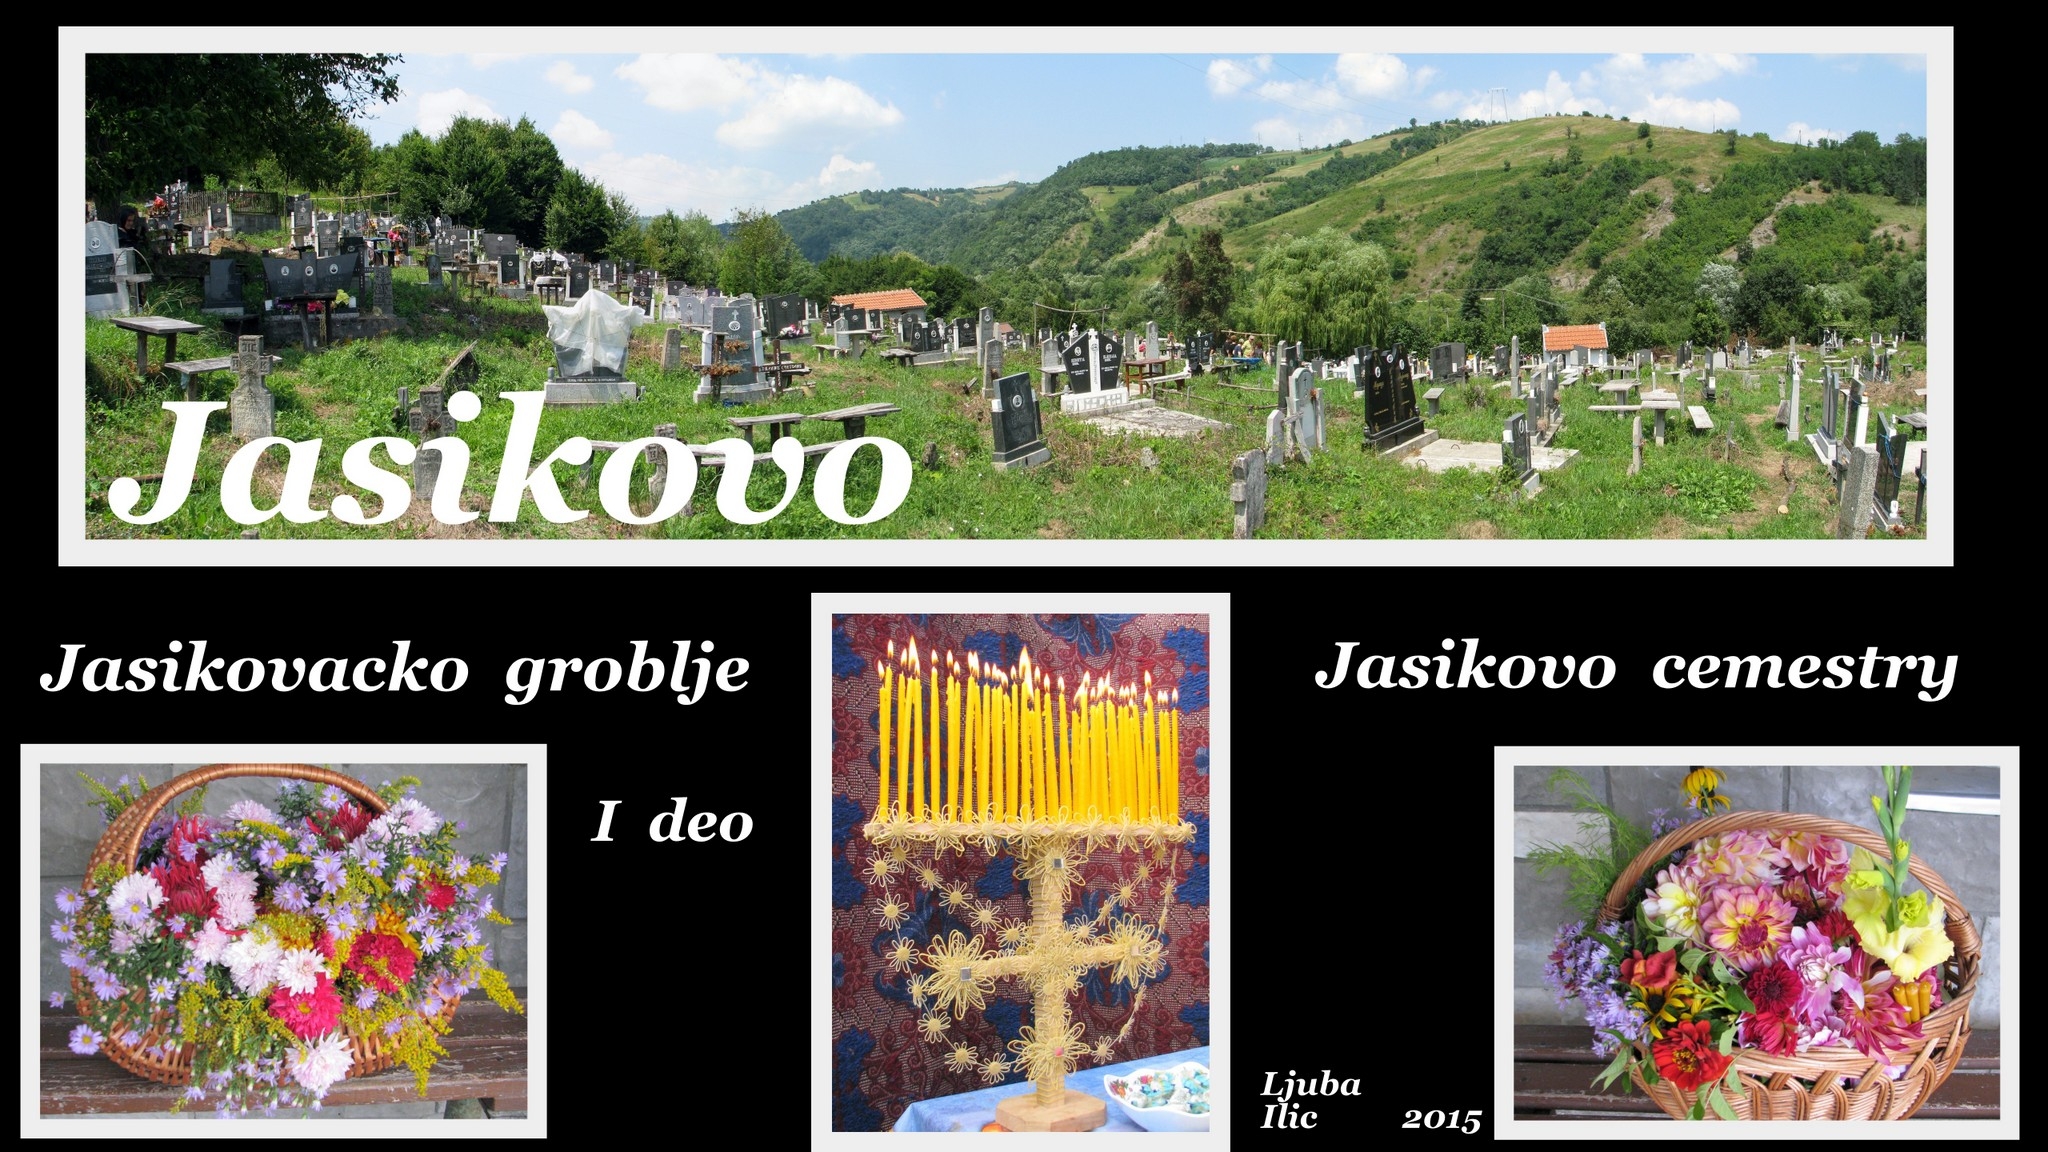 Jasikovo Cemetery - Jasikovacko Groblje